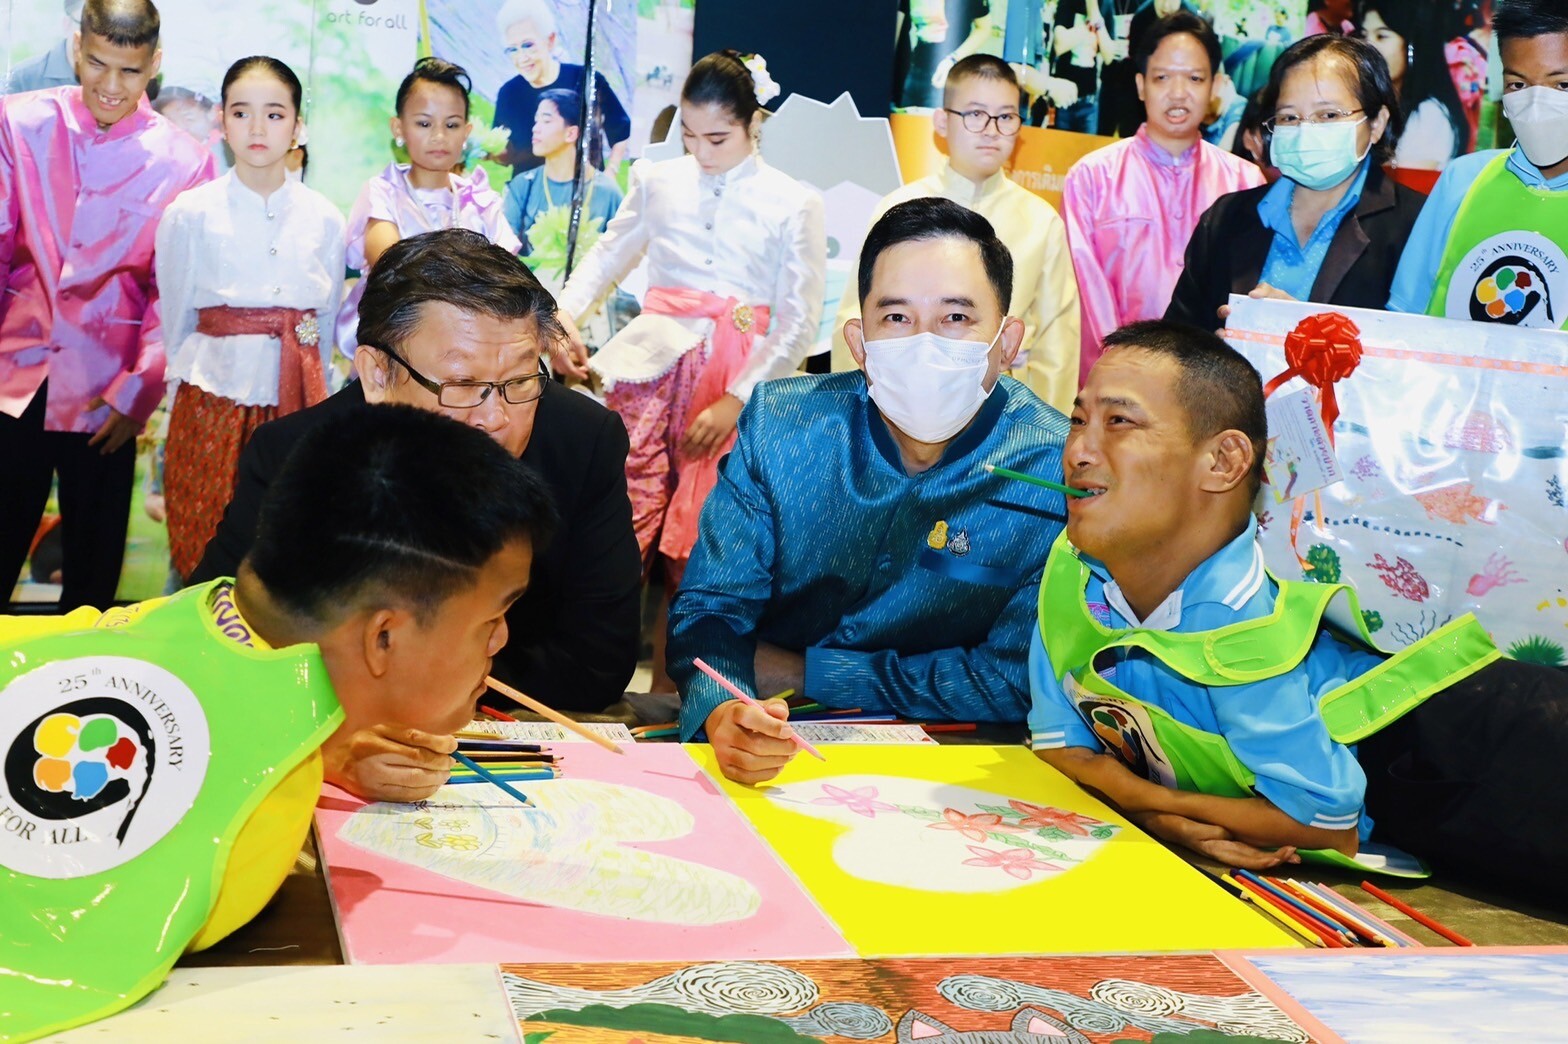 เด็กและเยาวชนพิการและไม่พิการ 5 ประเทศอาเซียนร่วมโครงการศิลปะเพื่อมวลมนุษย์ "Art for All" 26-28 ส.ค.นี้ที่ประเทศไทย